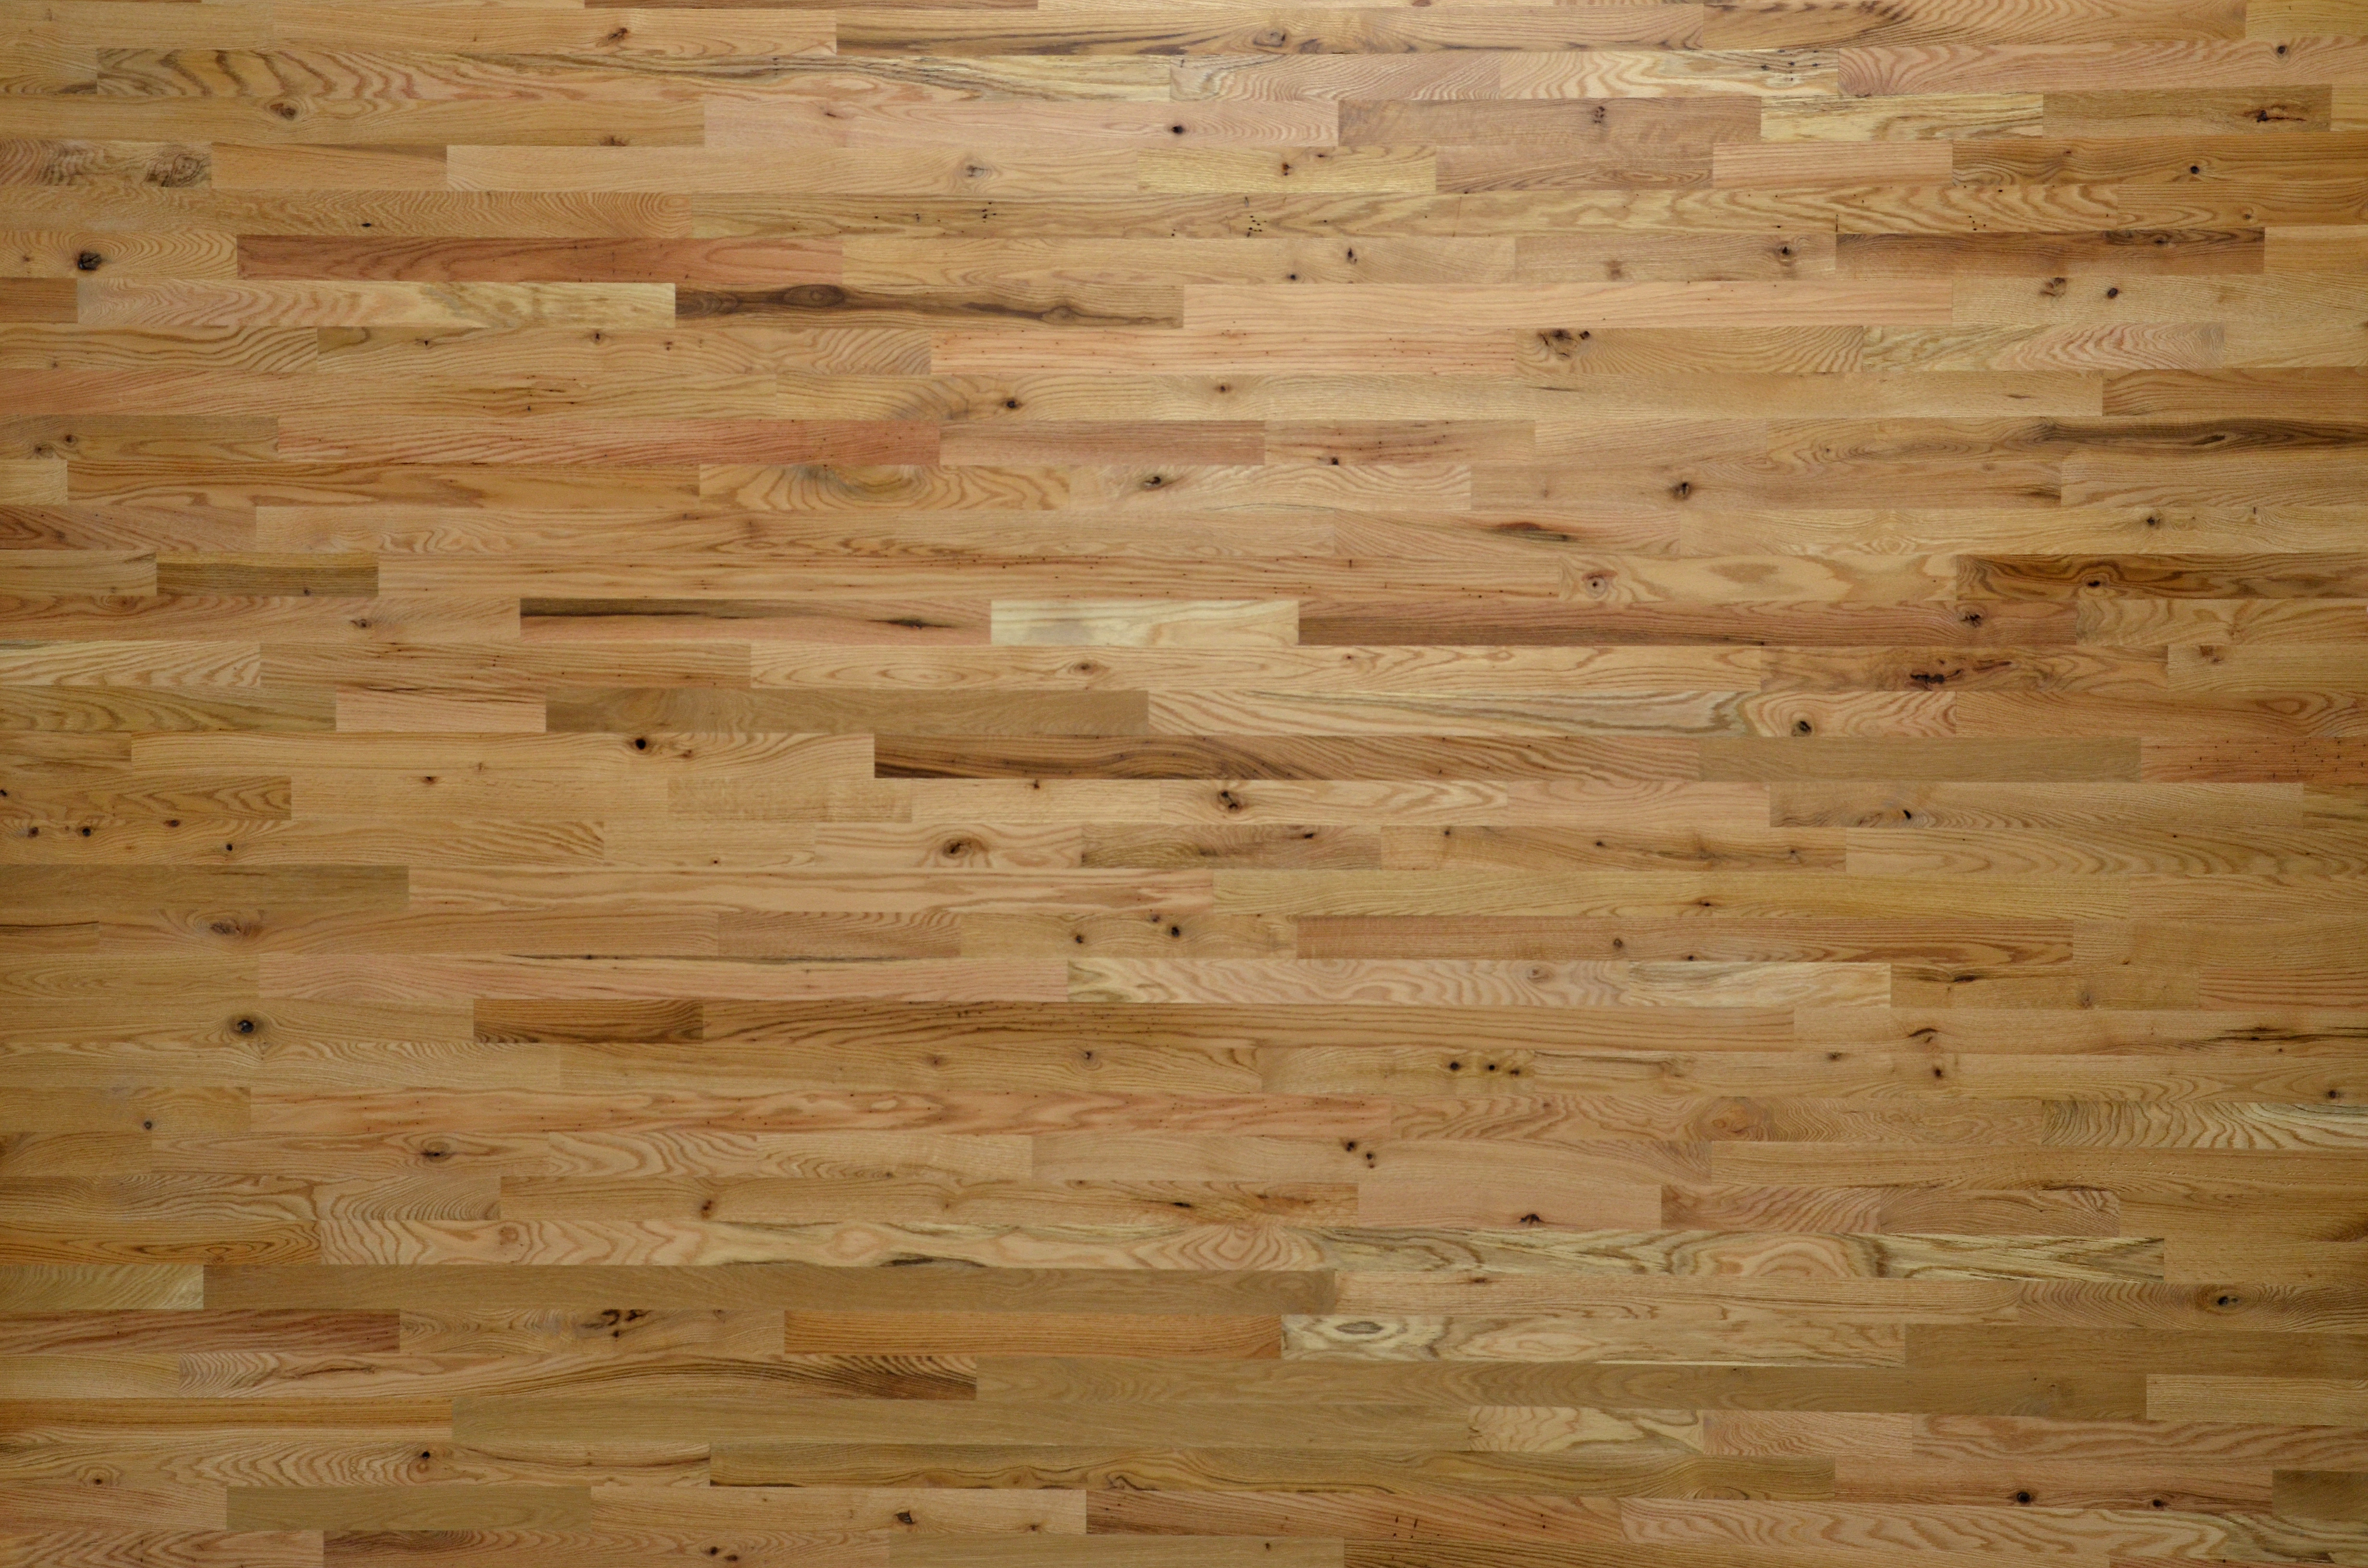 23 Fantastic 3 4 Inch Unfinished Oak Hardwood Flooring 2024 free download 3 4 inch unfinished oak hardwood flooring of lacrosse hardwood flooring walnut white oak red oak hickory intended for 2 common red oak